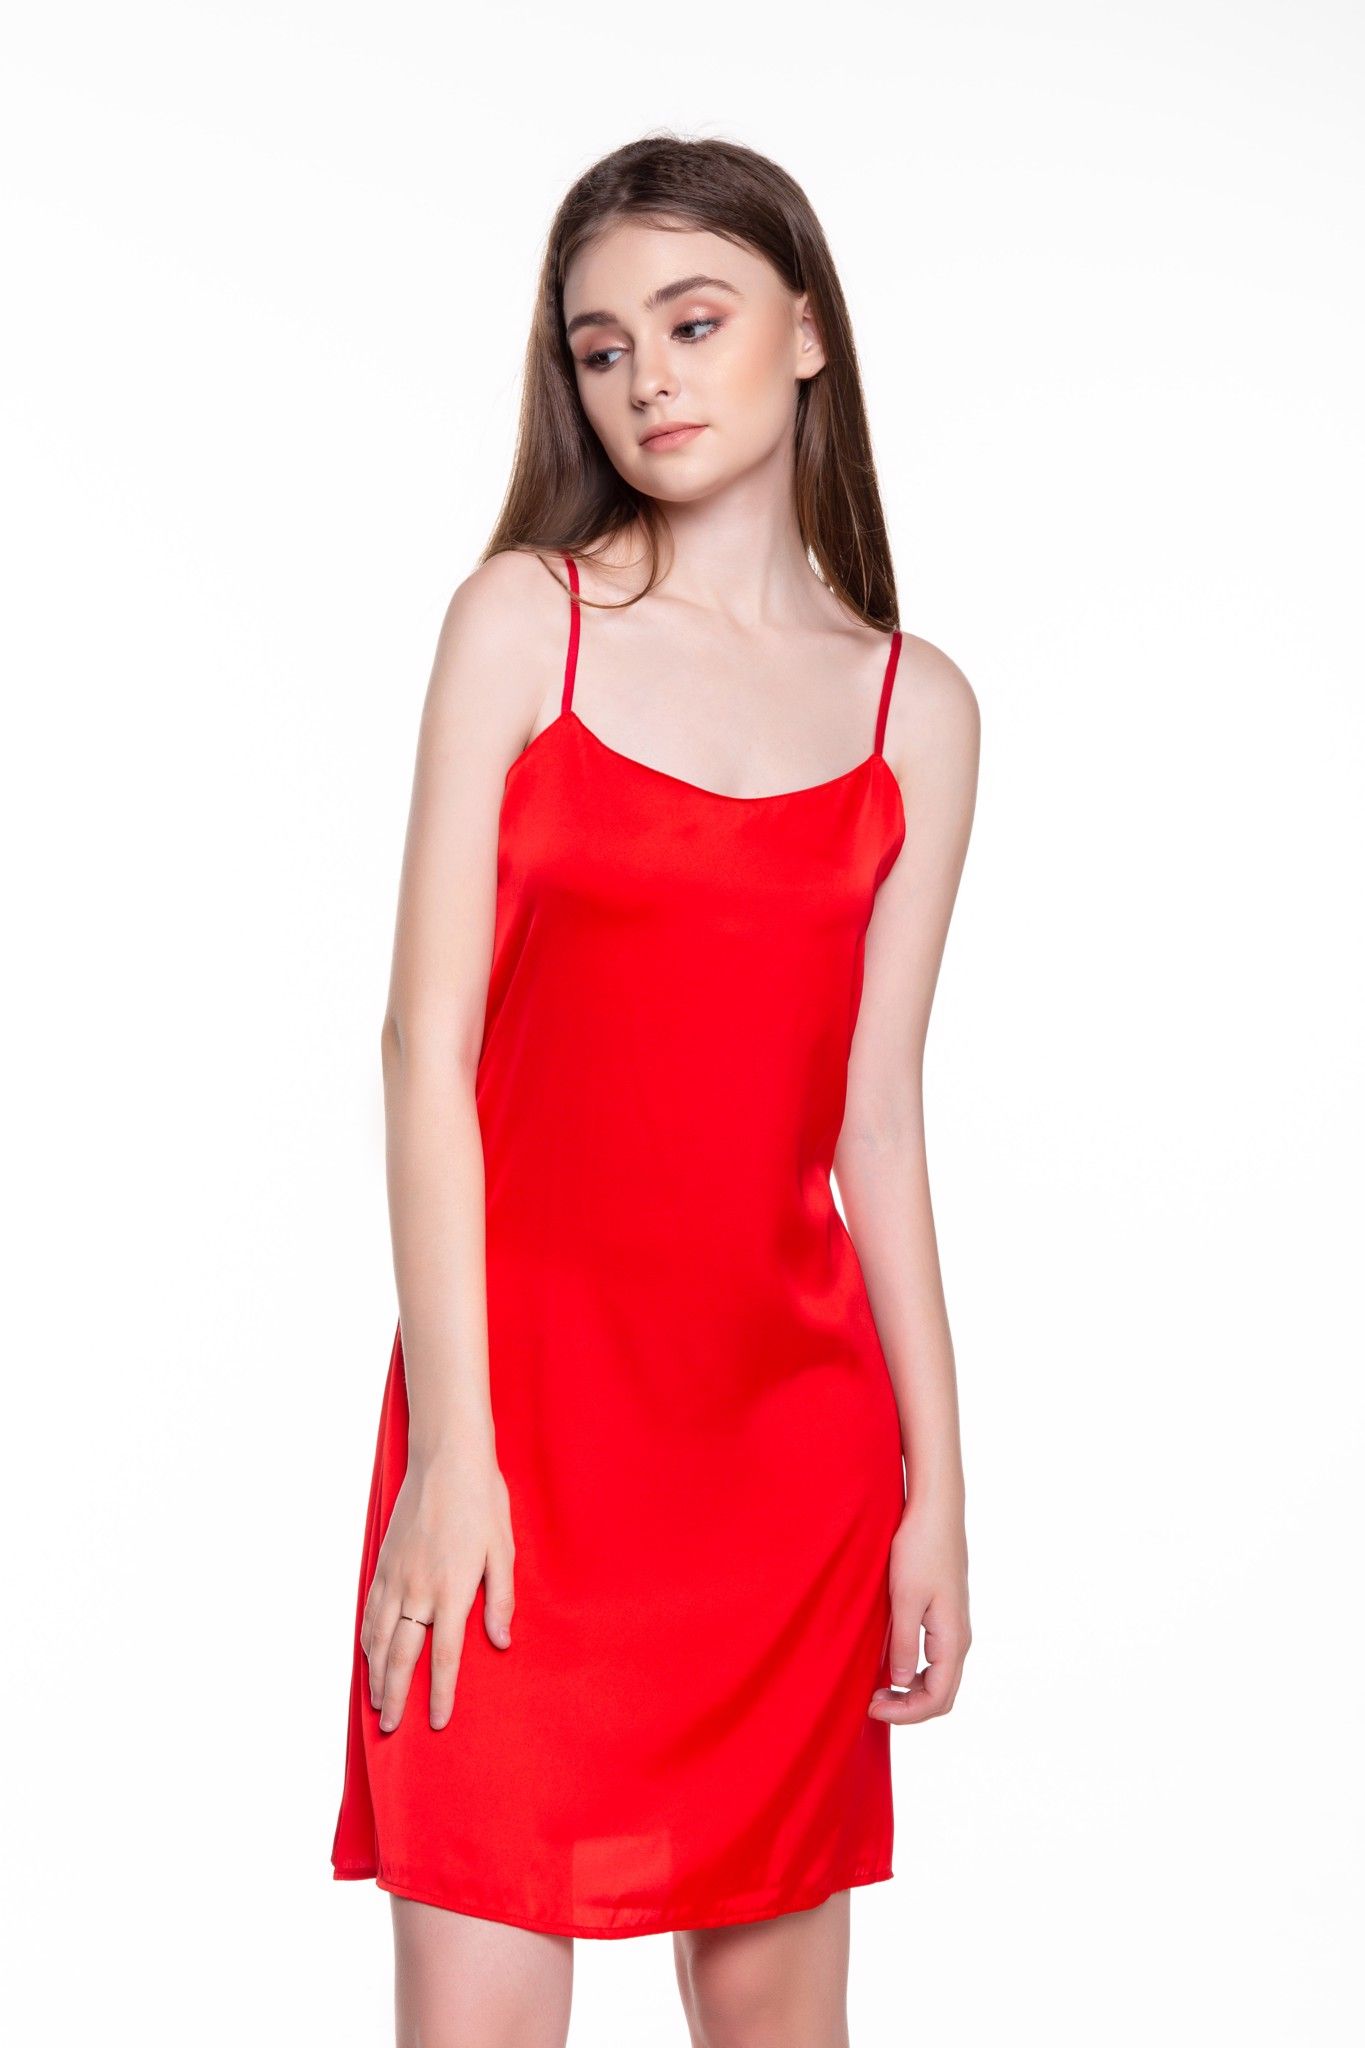  Dreamy VS04 Váy ngủ suông hai dây nhiều màu quyến rũ có 3 màu đỏ đen và hồng pastel 